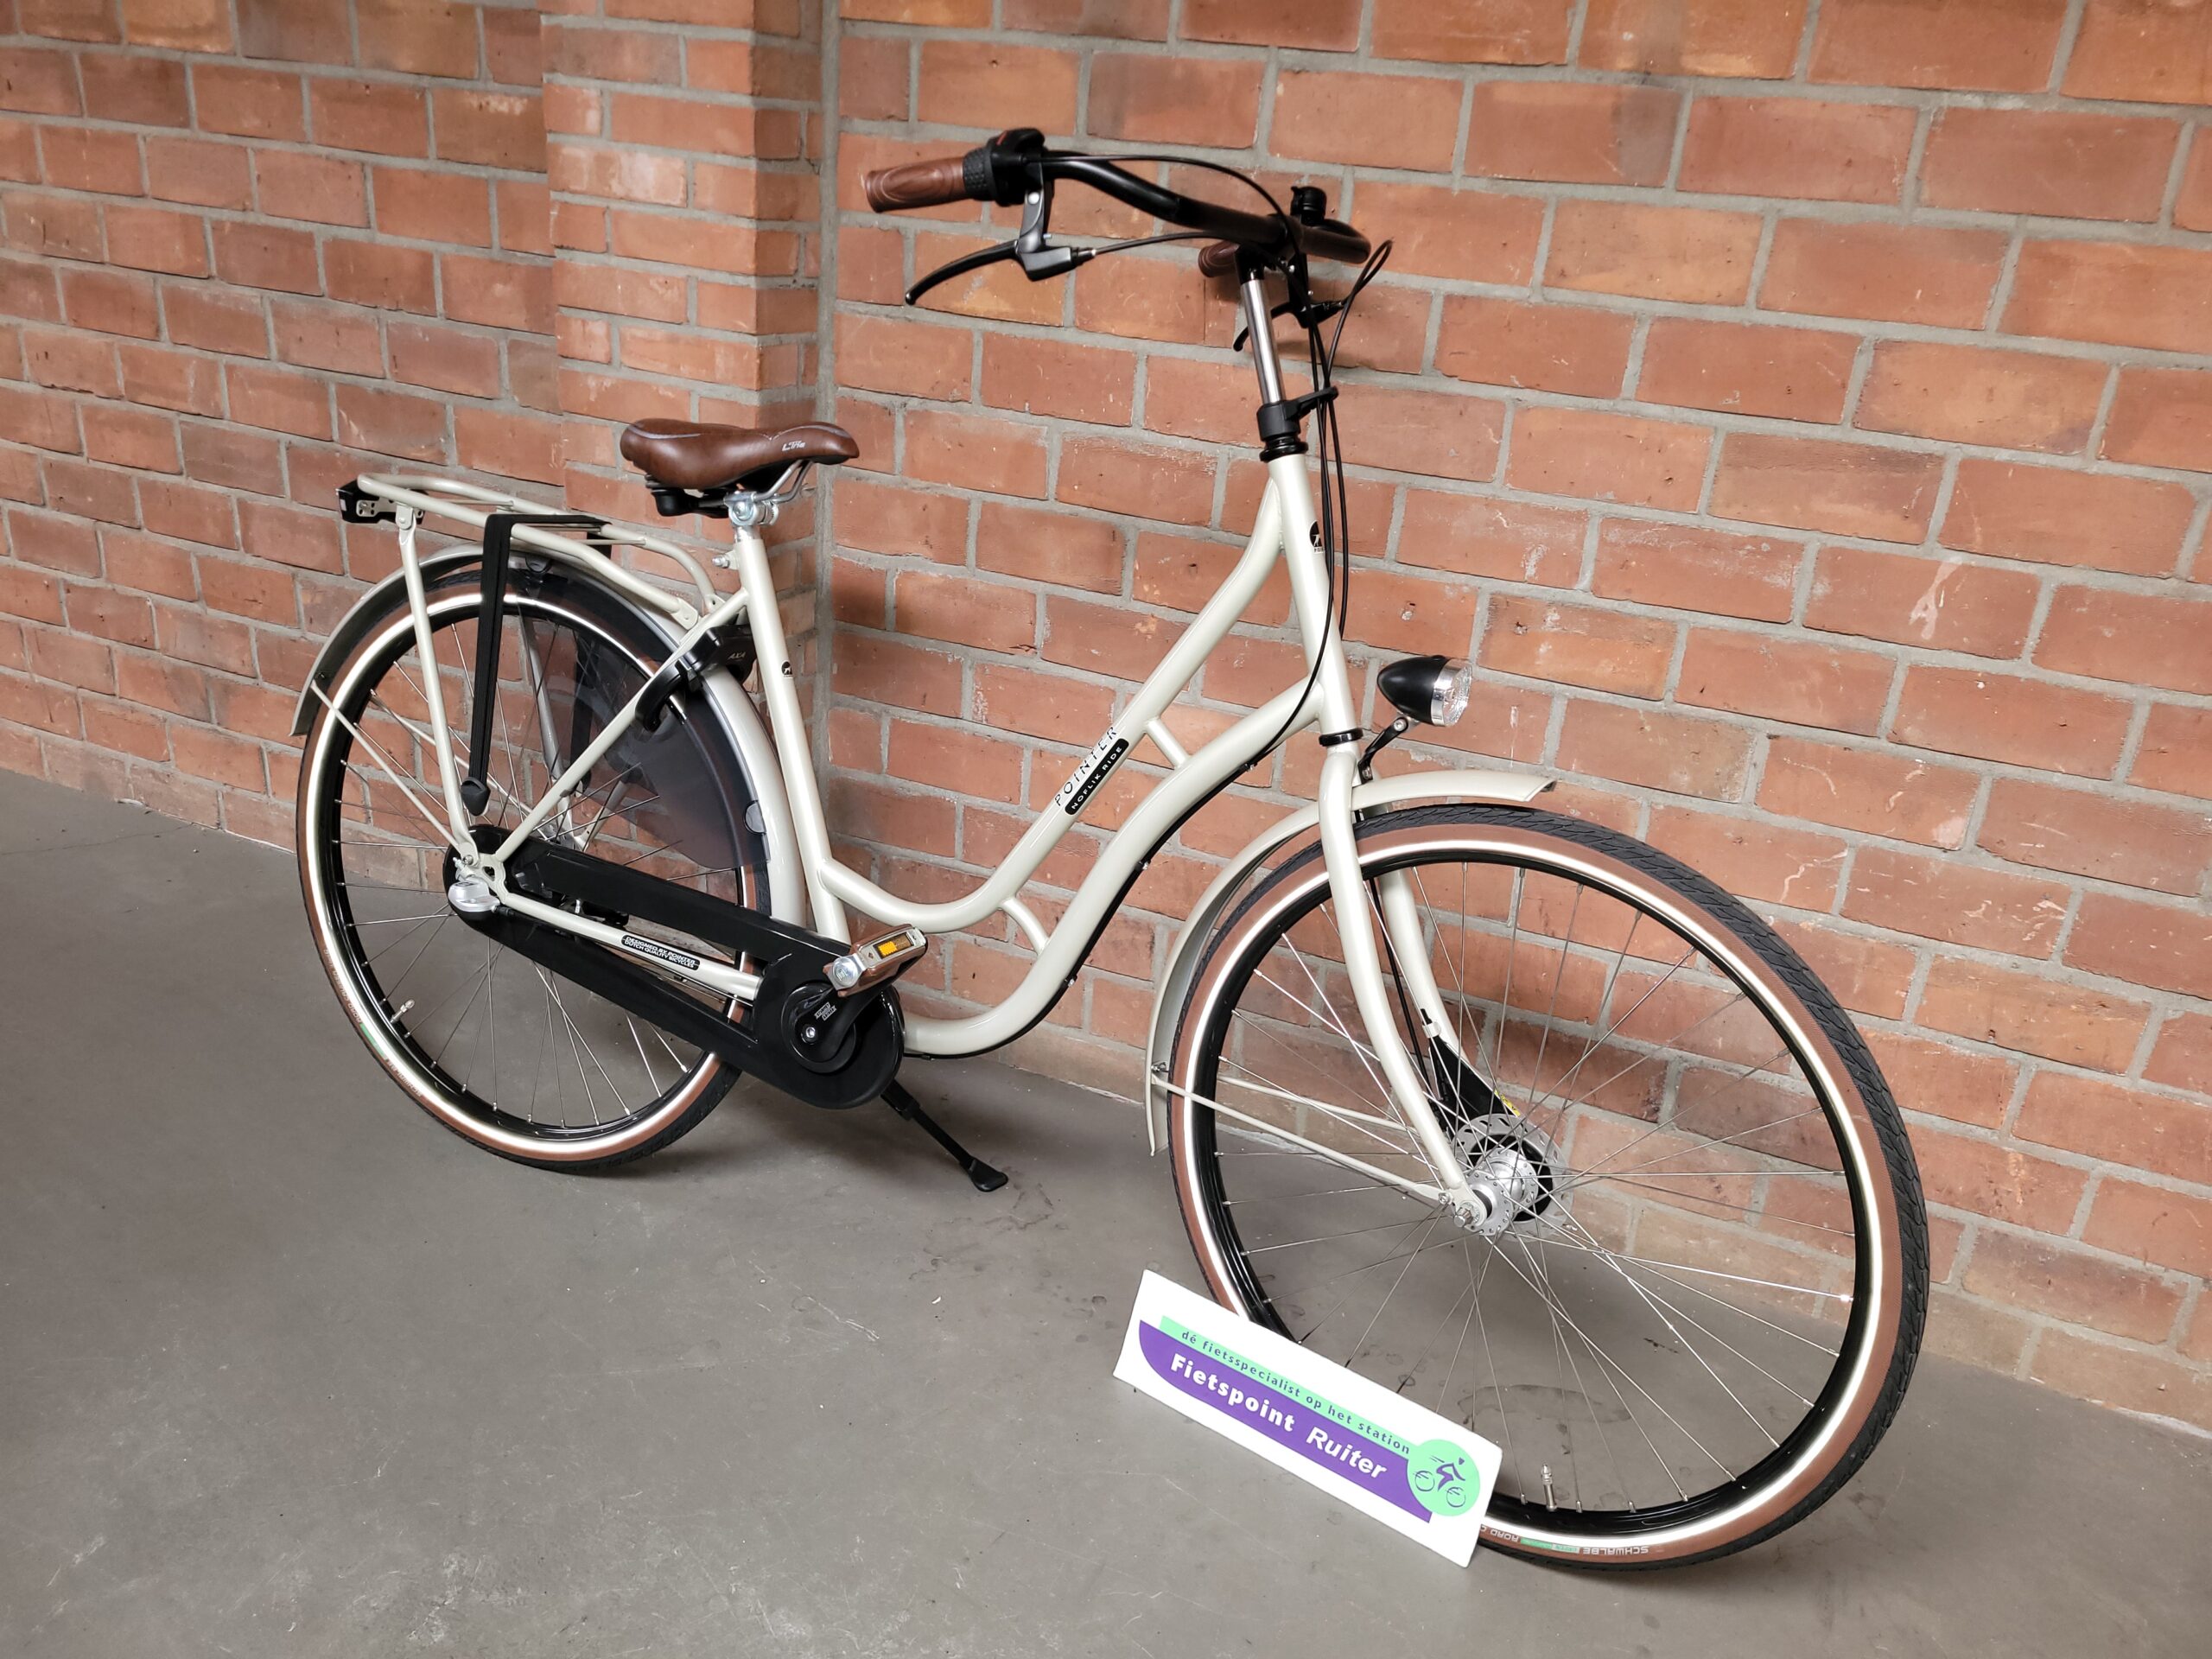 Fietspoint Ruiter - Uw one-stop fietsspecialist op Station Hoorn! -